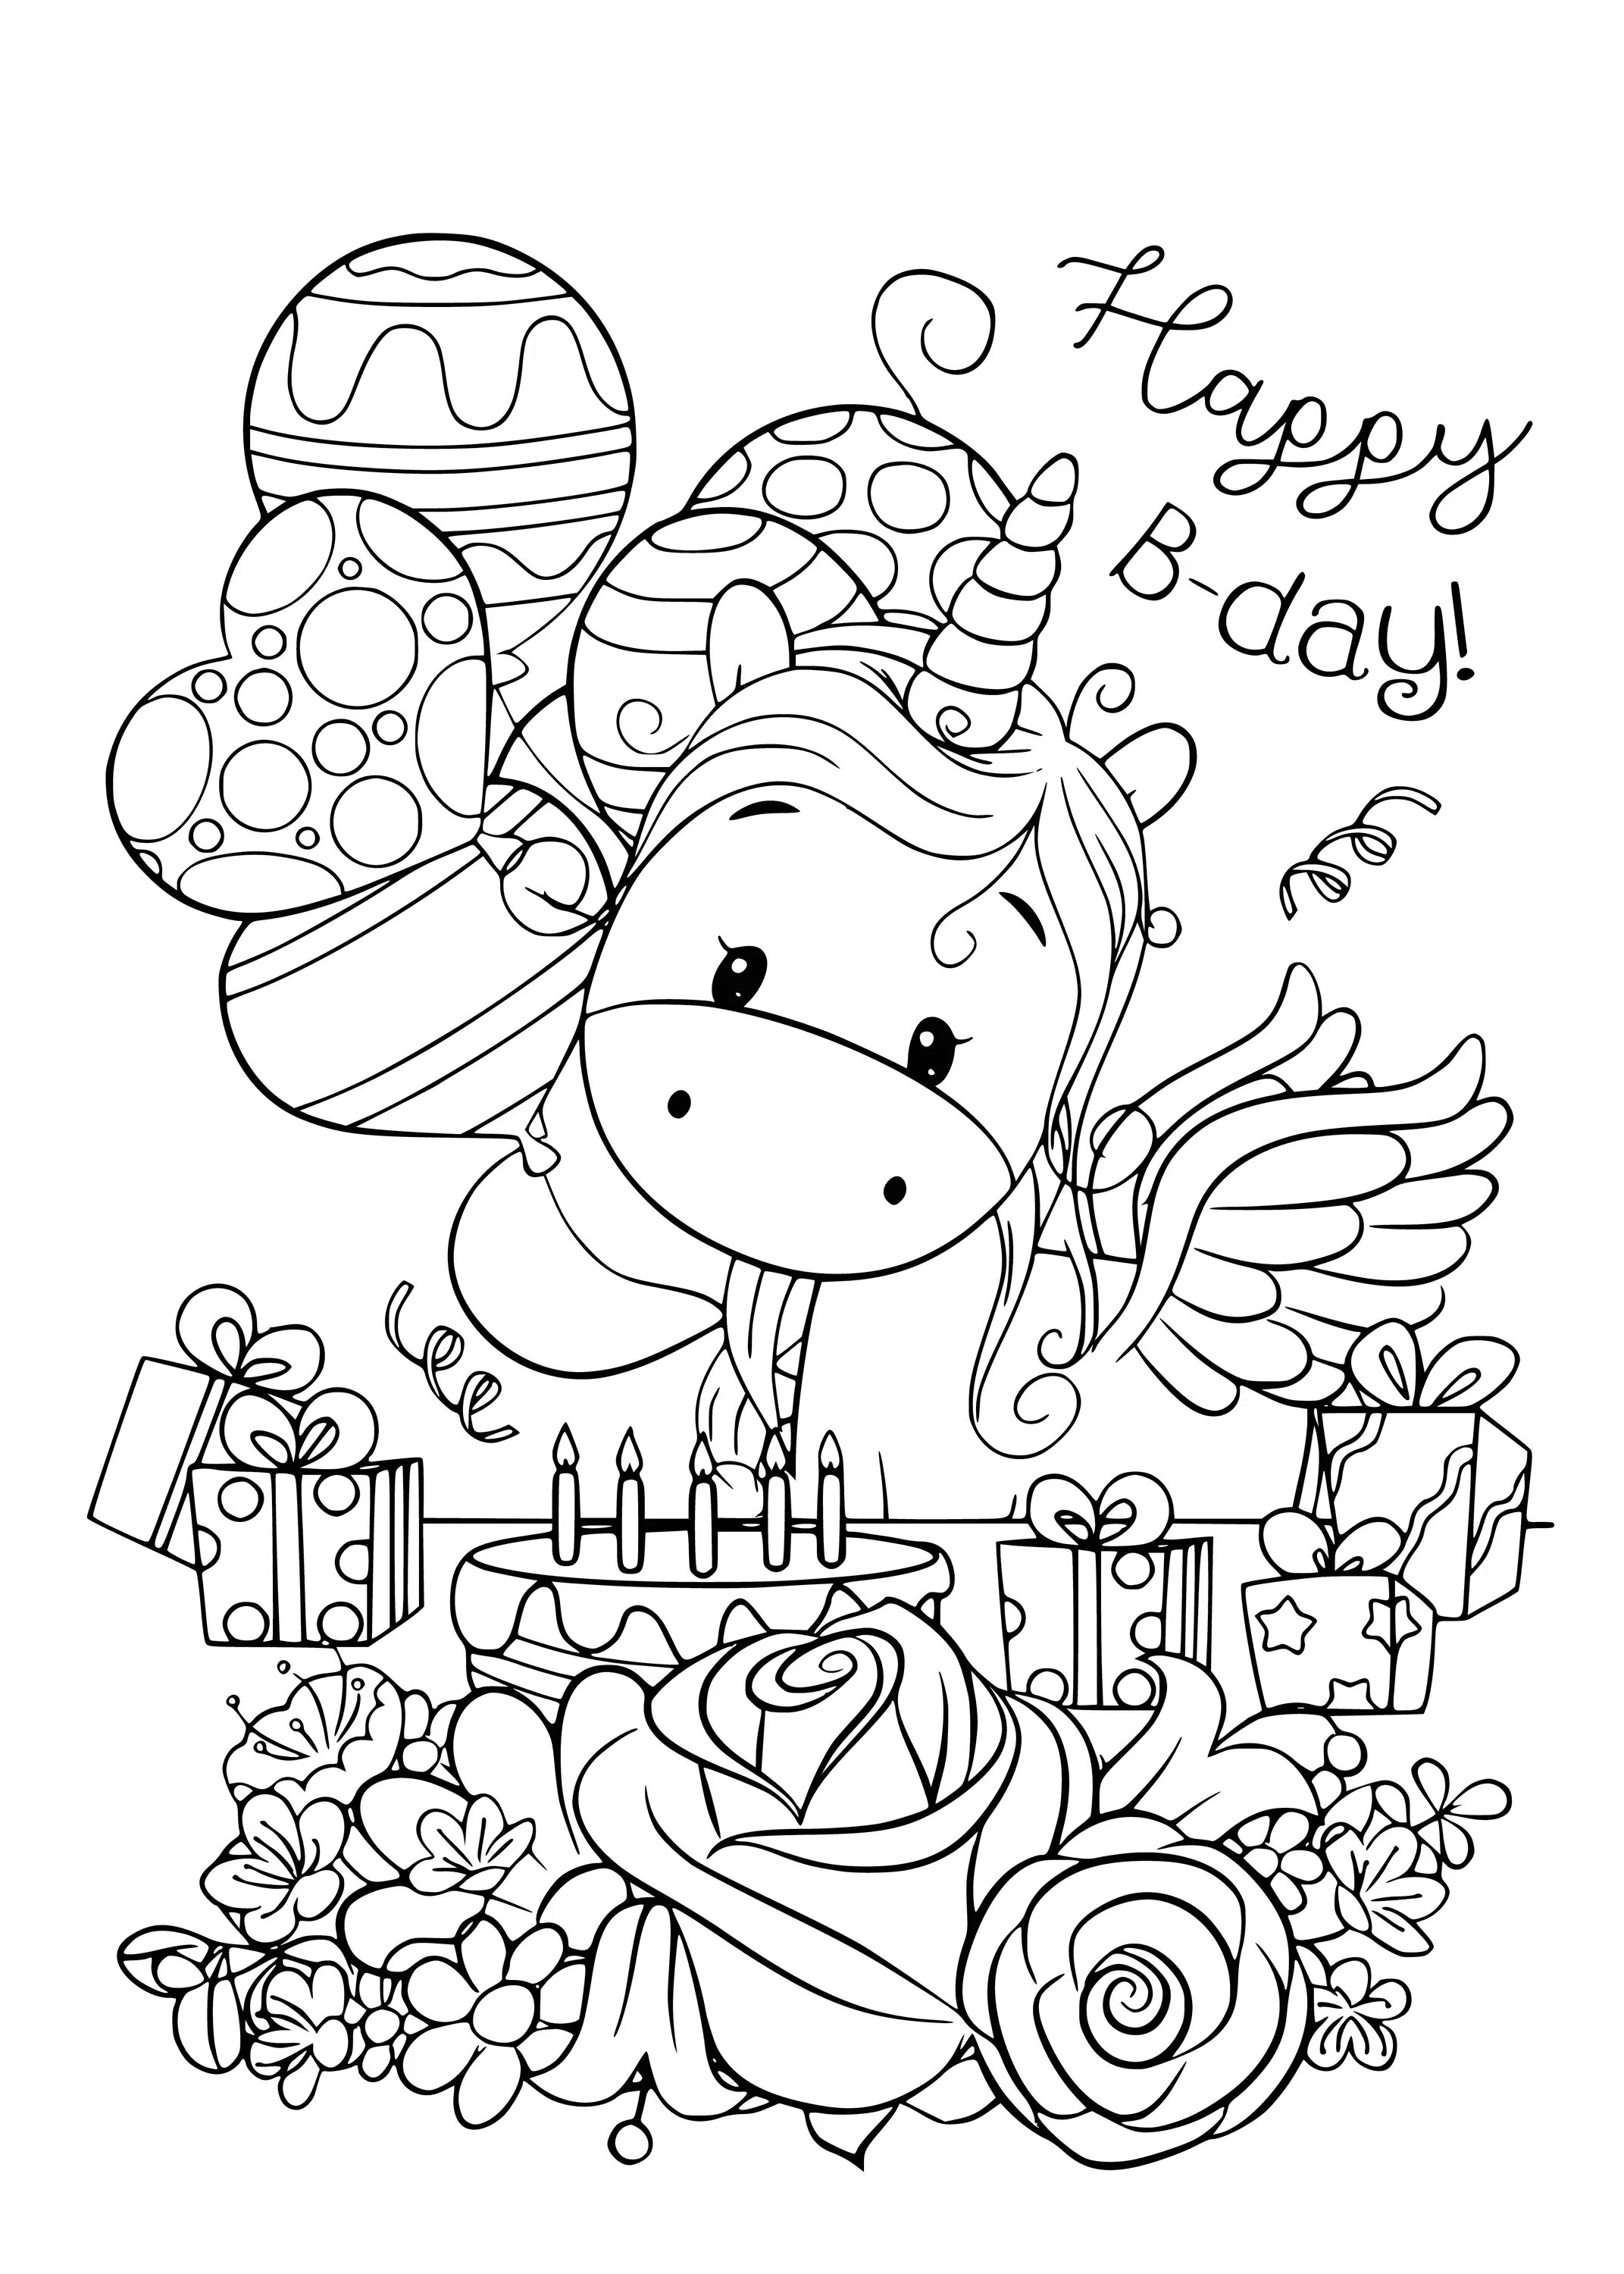 Поздравления с днем раскраска. Раскраска "с днем рождения!". Раскраска надинрошдения. Раскаскина день рождения. С днем рождения раскраска для детей.